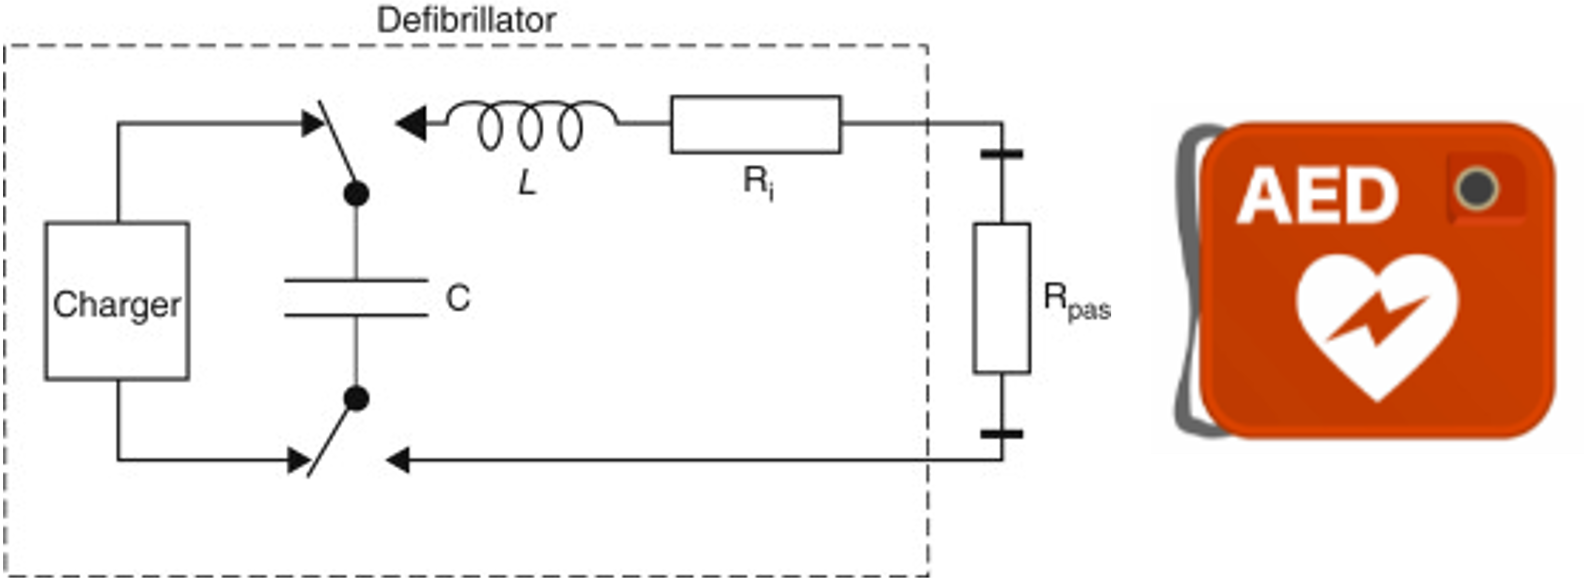 図9 自動体外式除細動器（AED）の構成